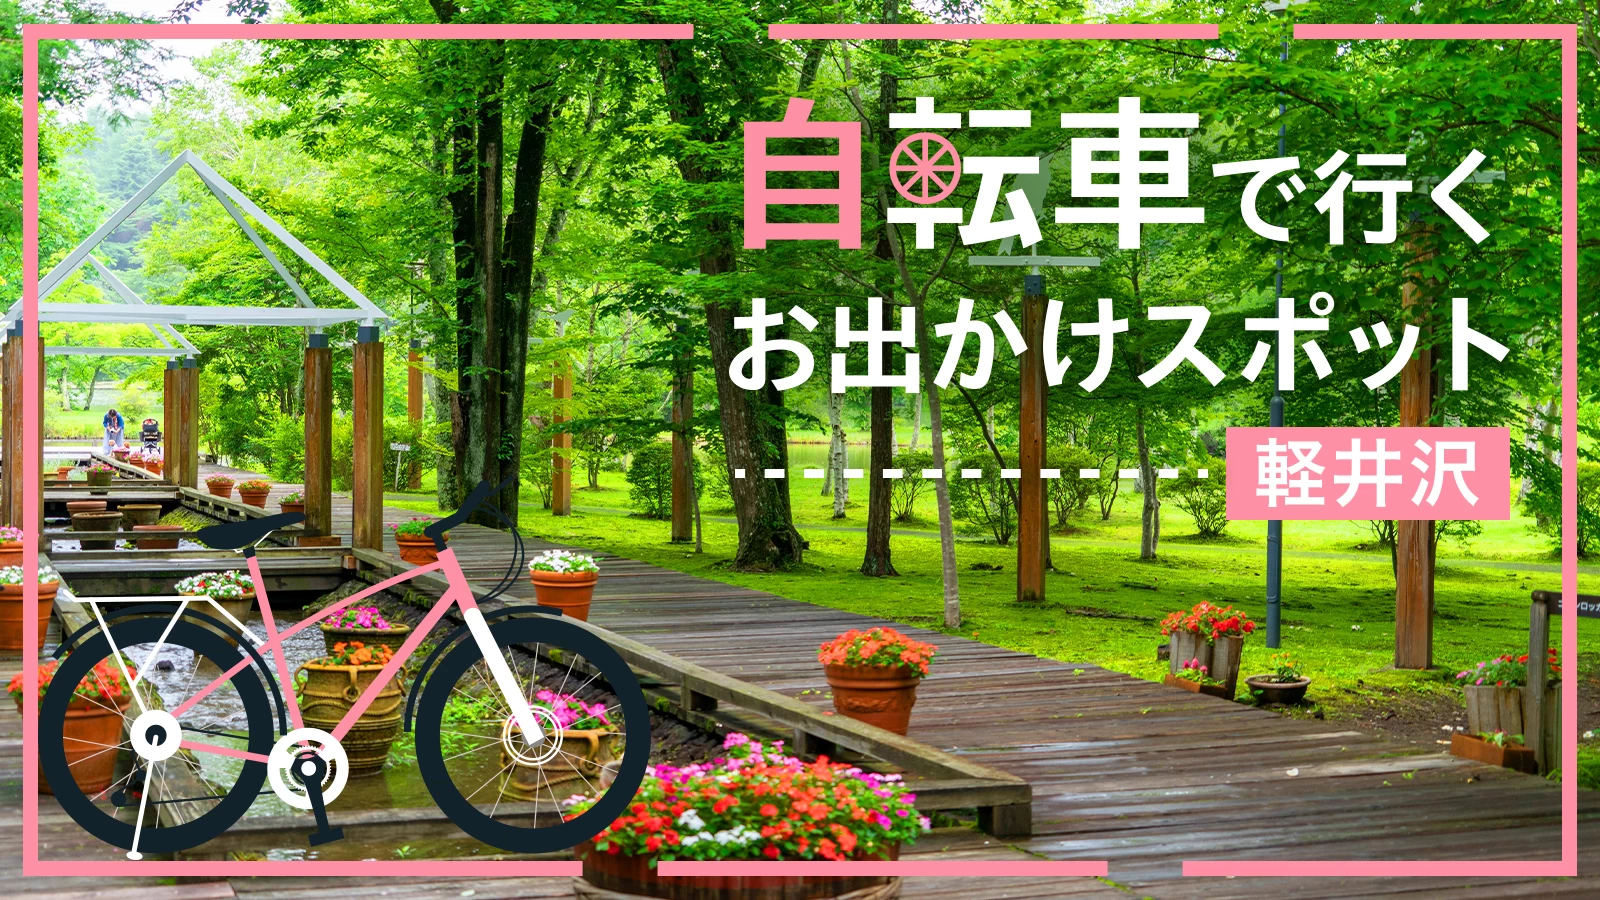 【軽井沢・サイクリング旅】自転車で行くおすすめのおでかけスポット10選